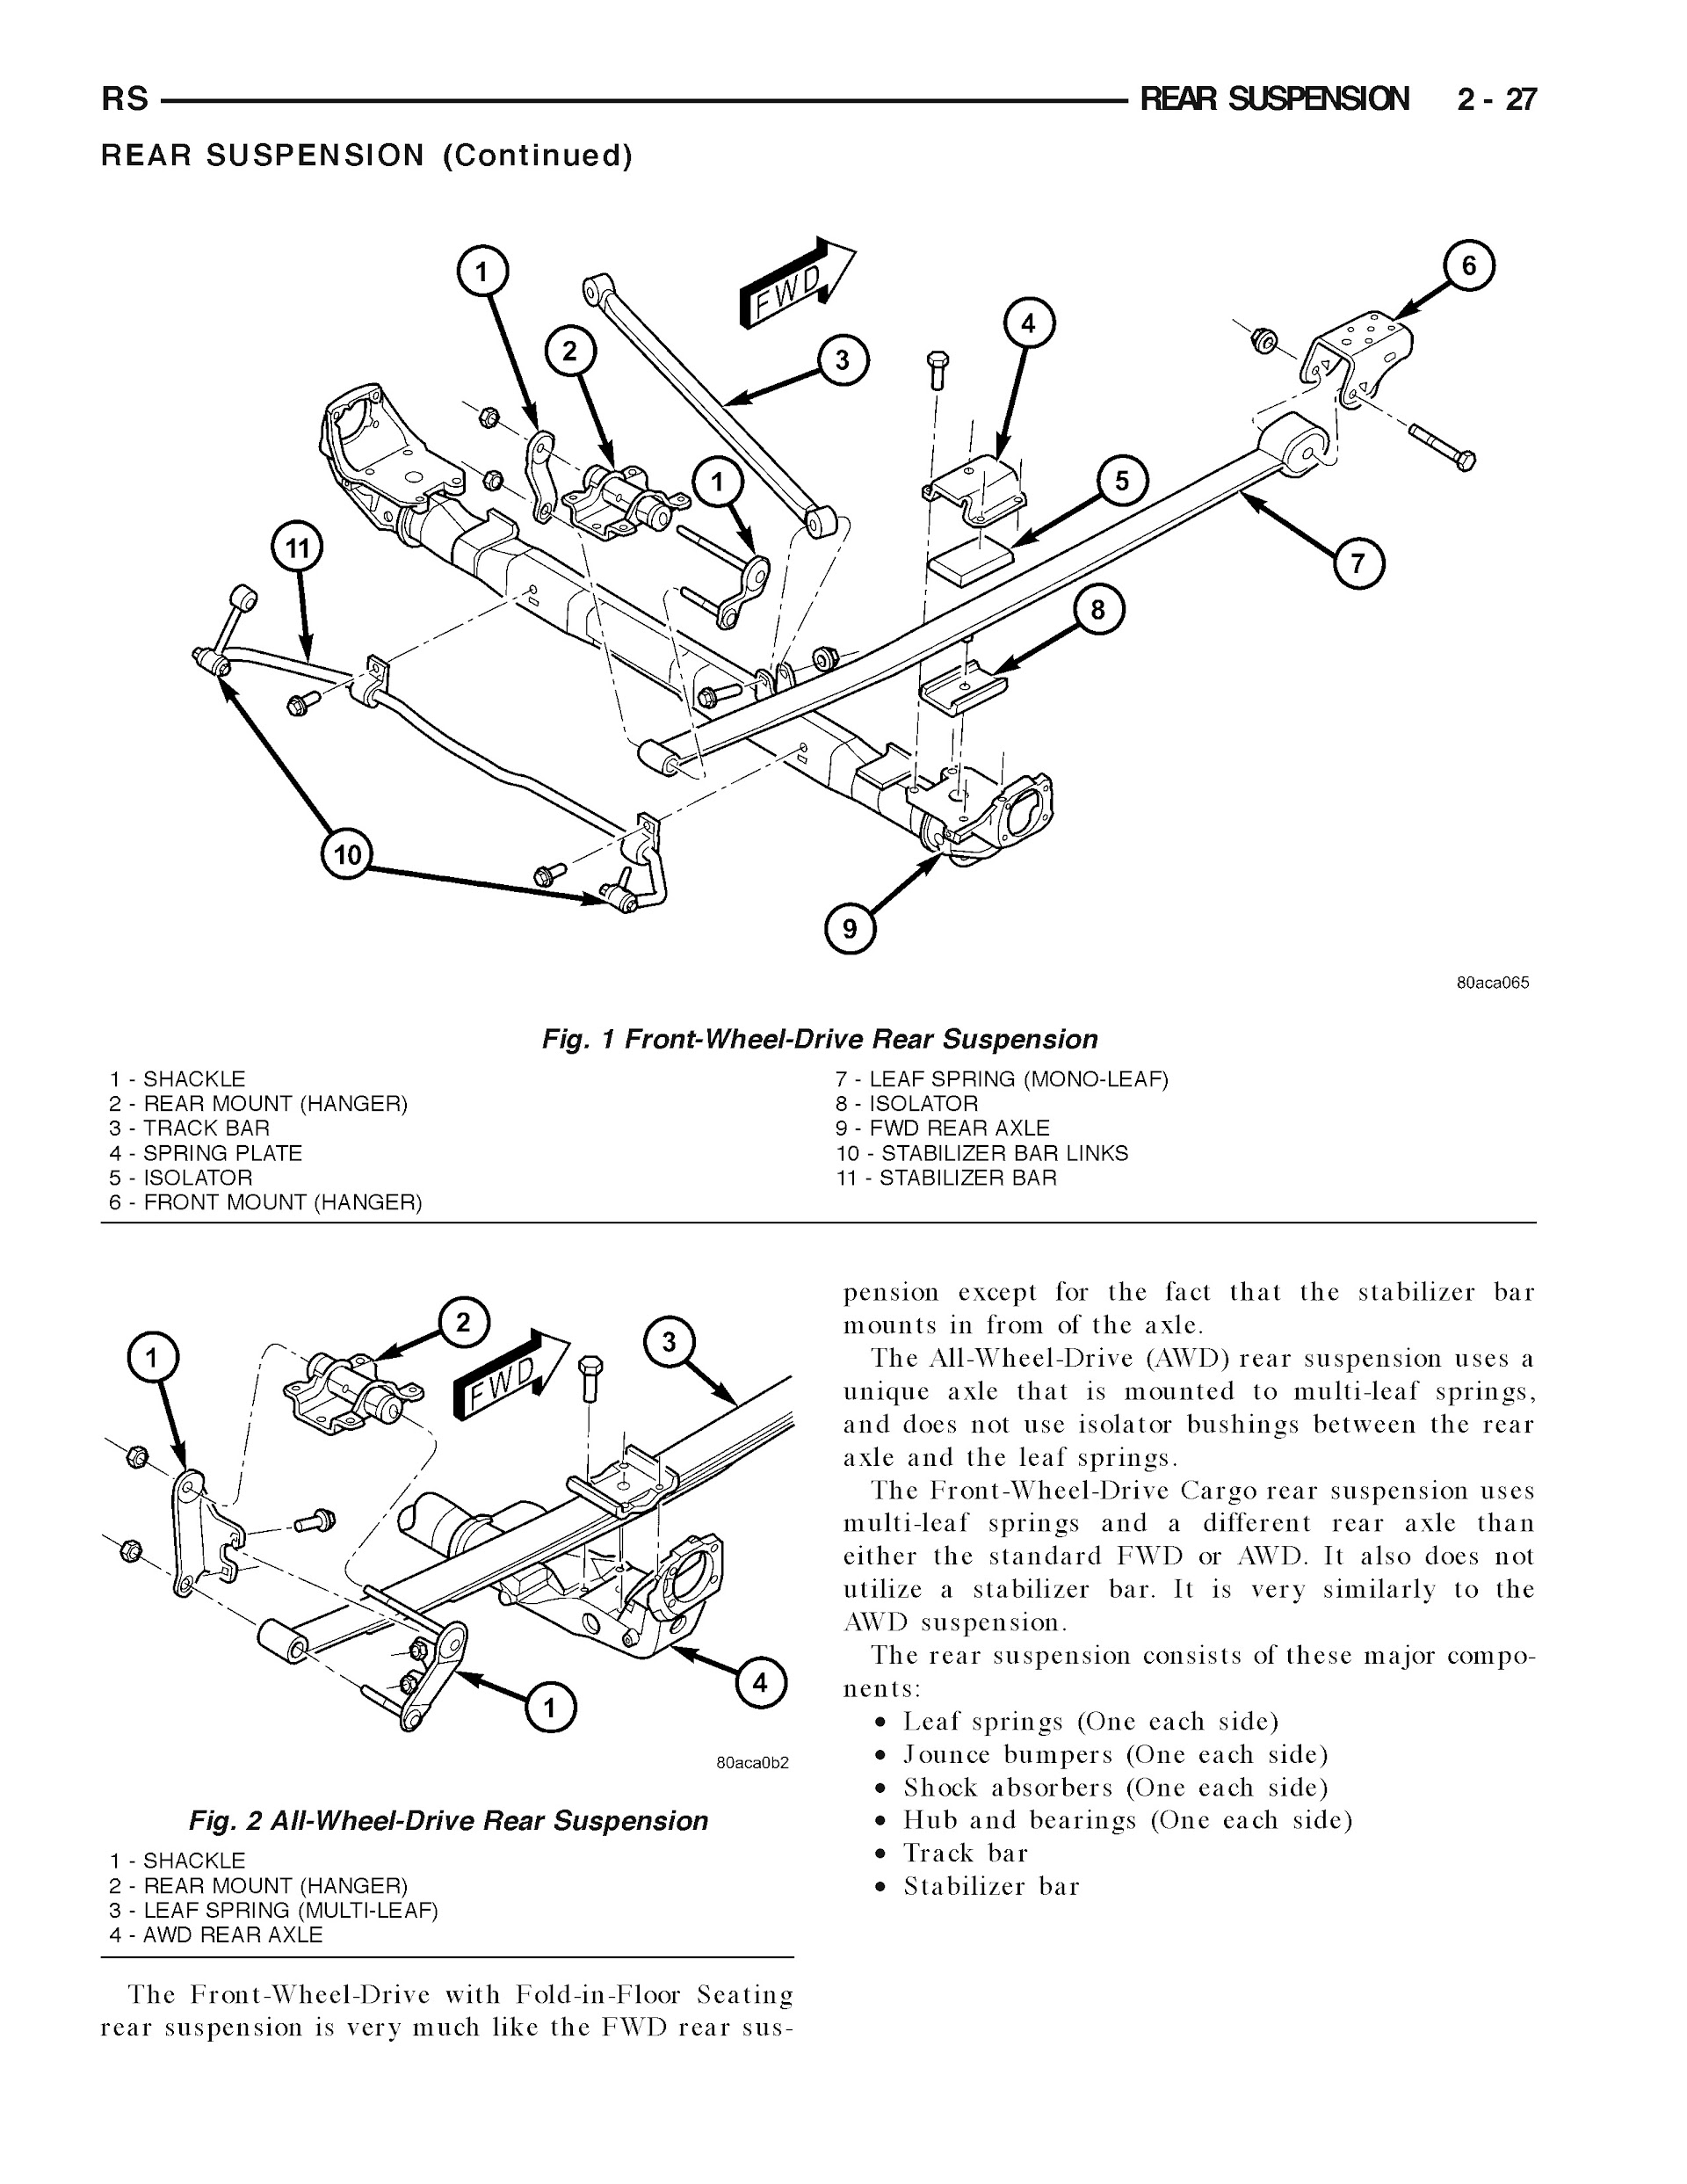 2005-2006 Dodge Grand Caravan Repair Manual, Rear Suspension